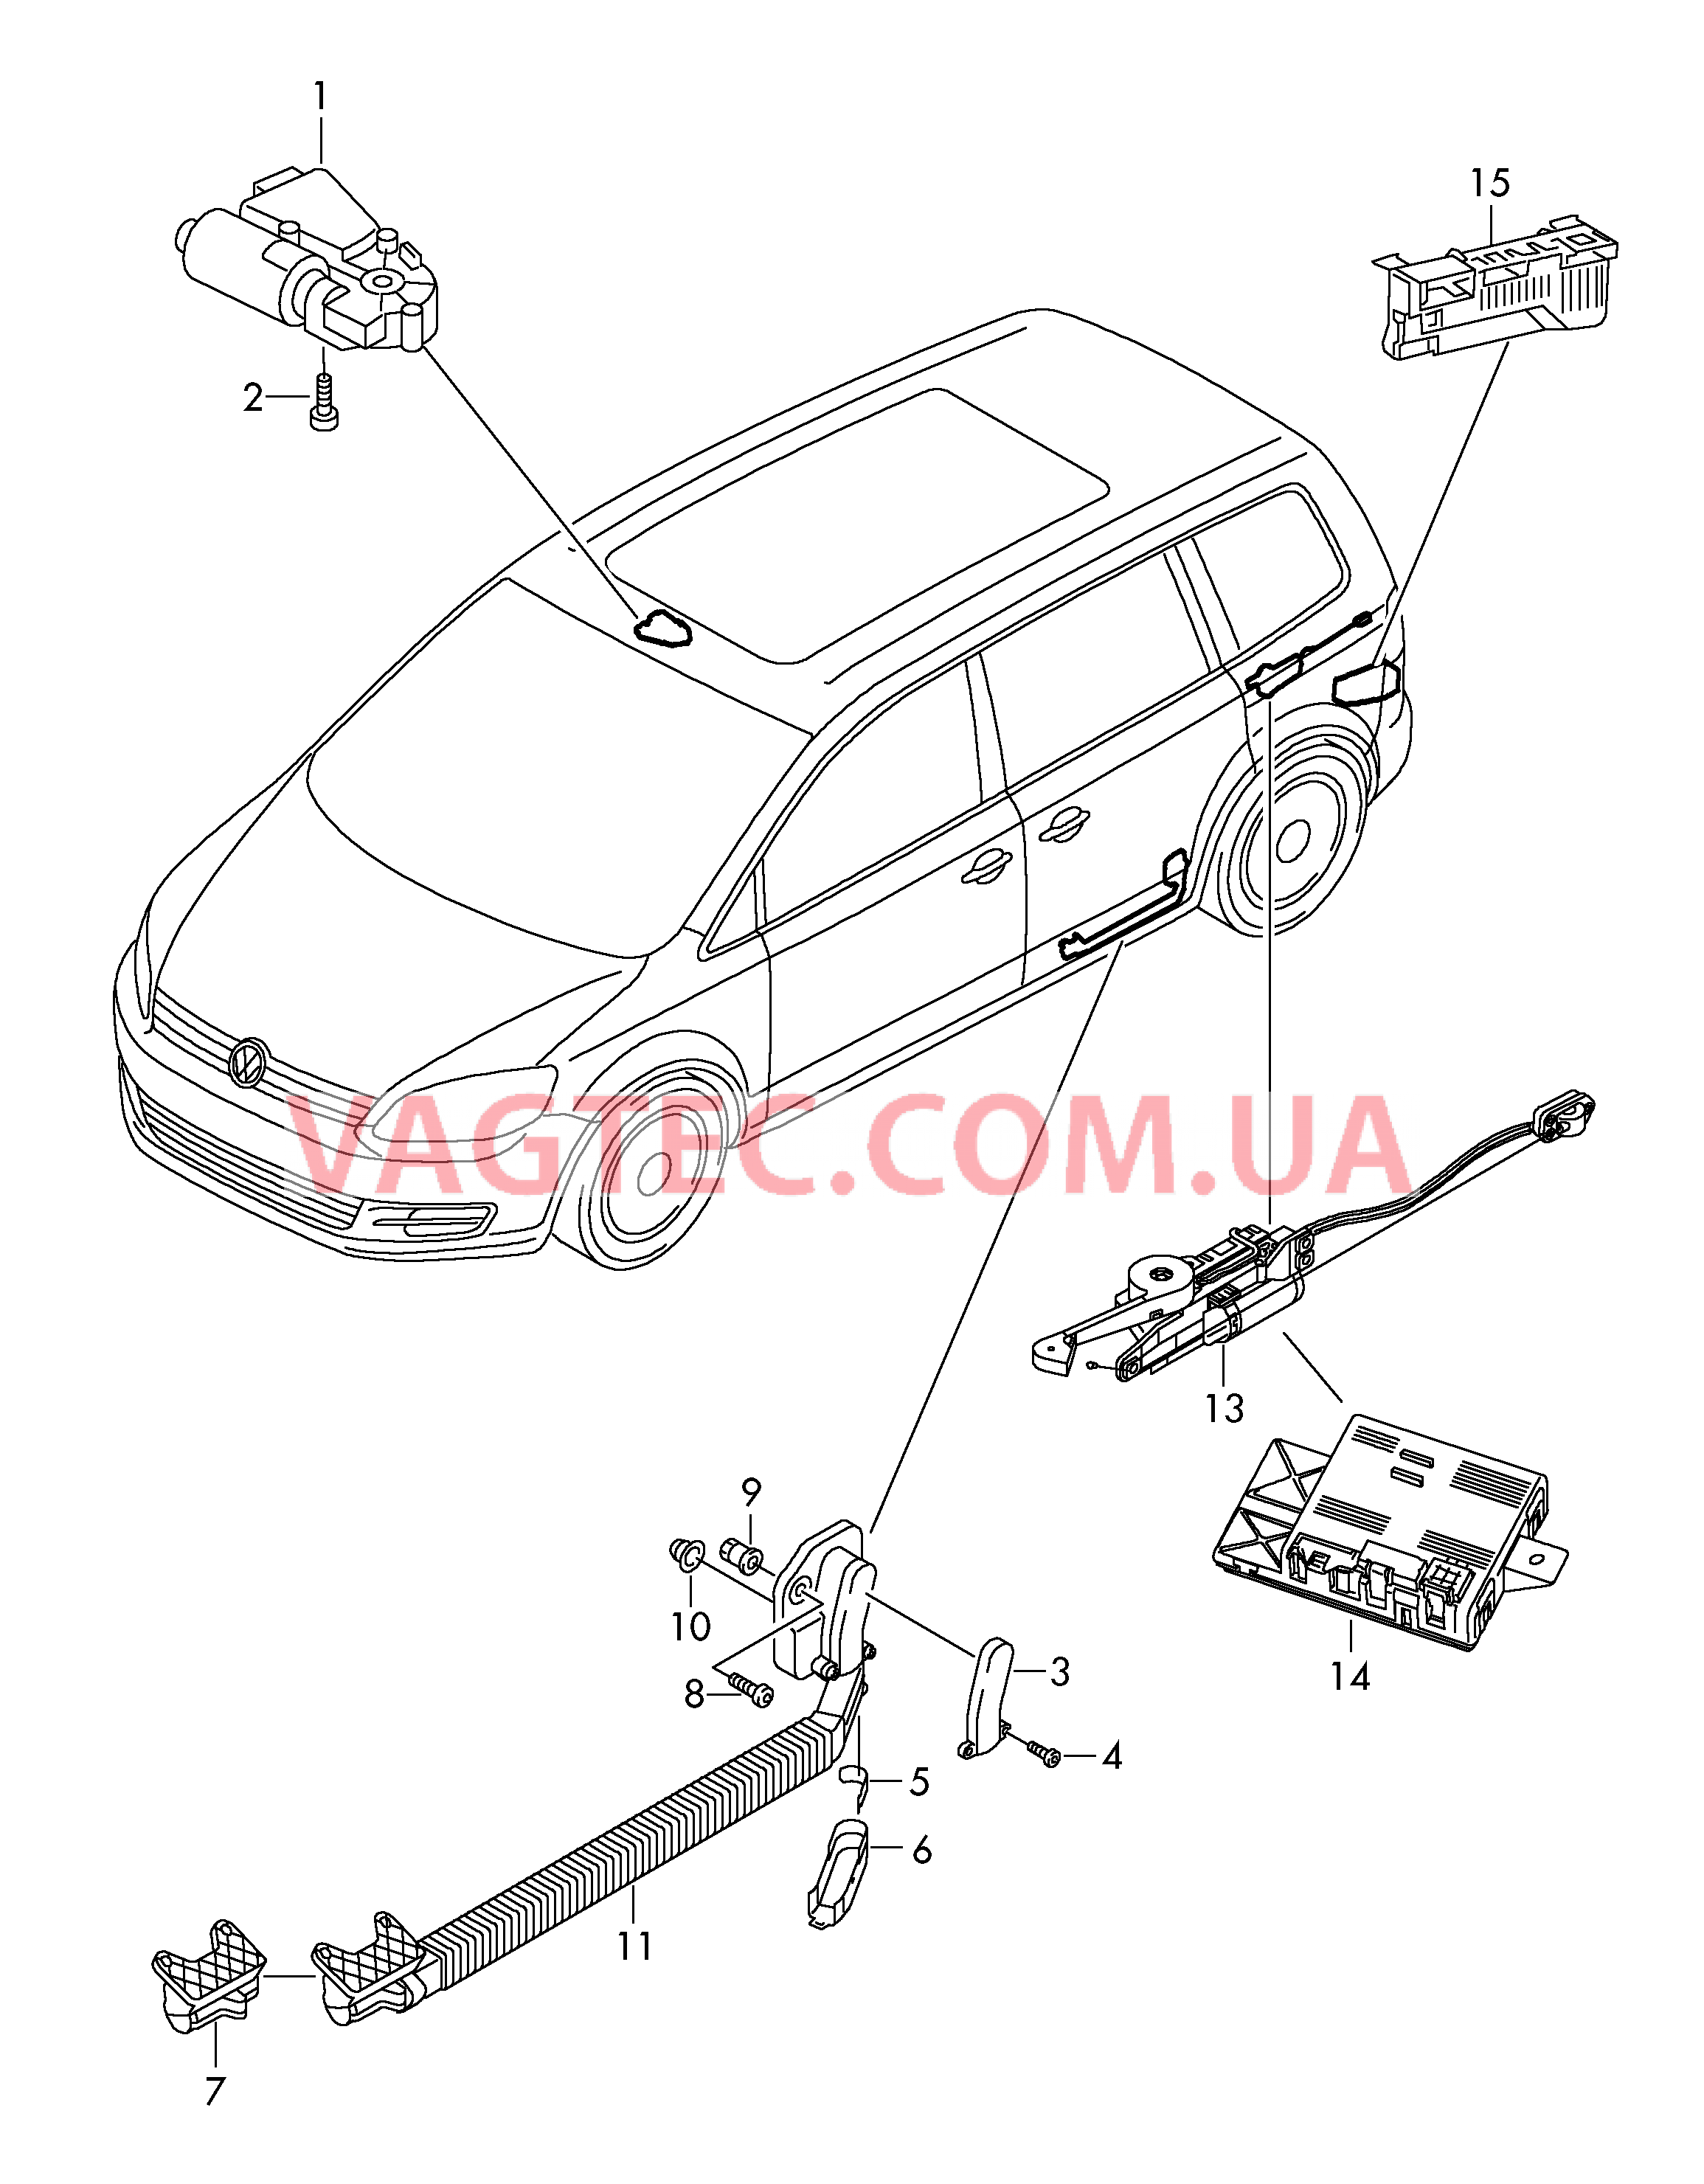 Мотор привода люка Электродетали для сдвижной двери  Блок управления доводчика  для SEAT Alhambra 2016